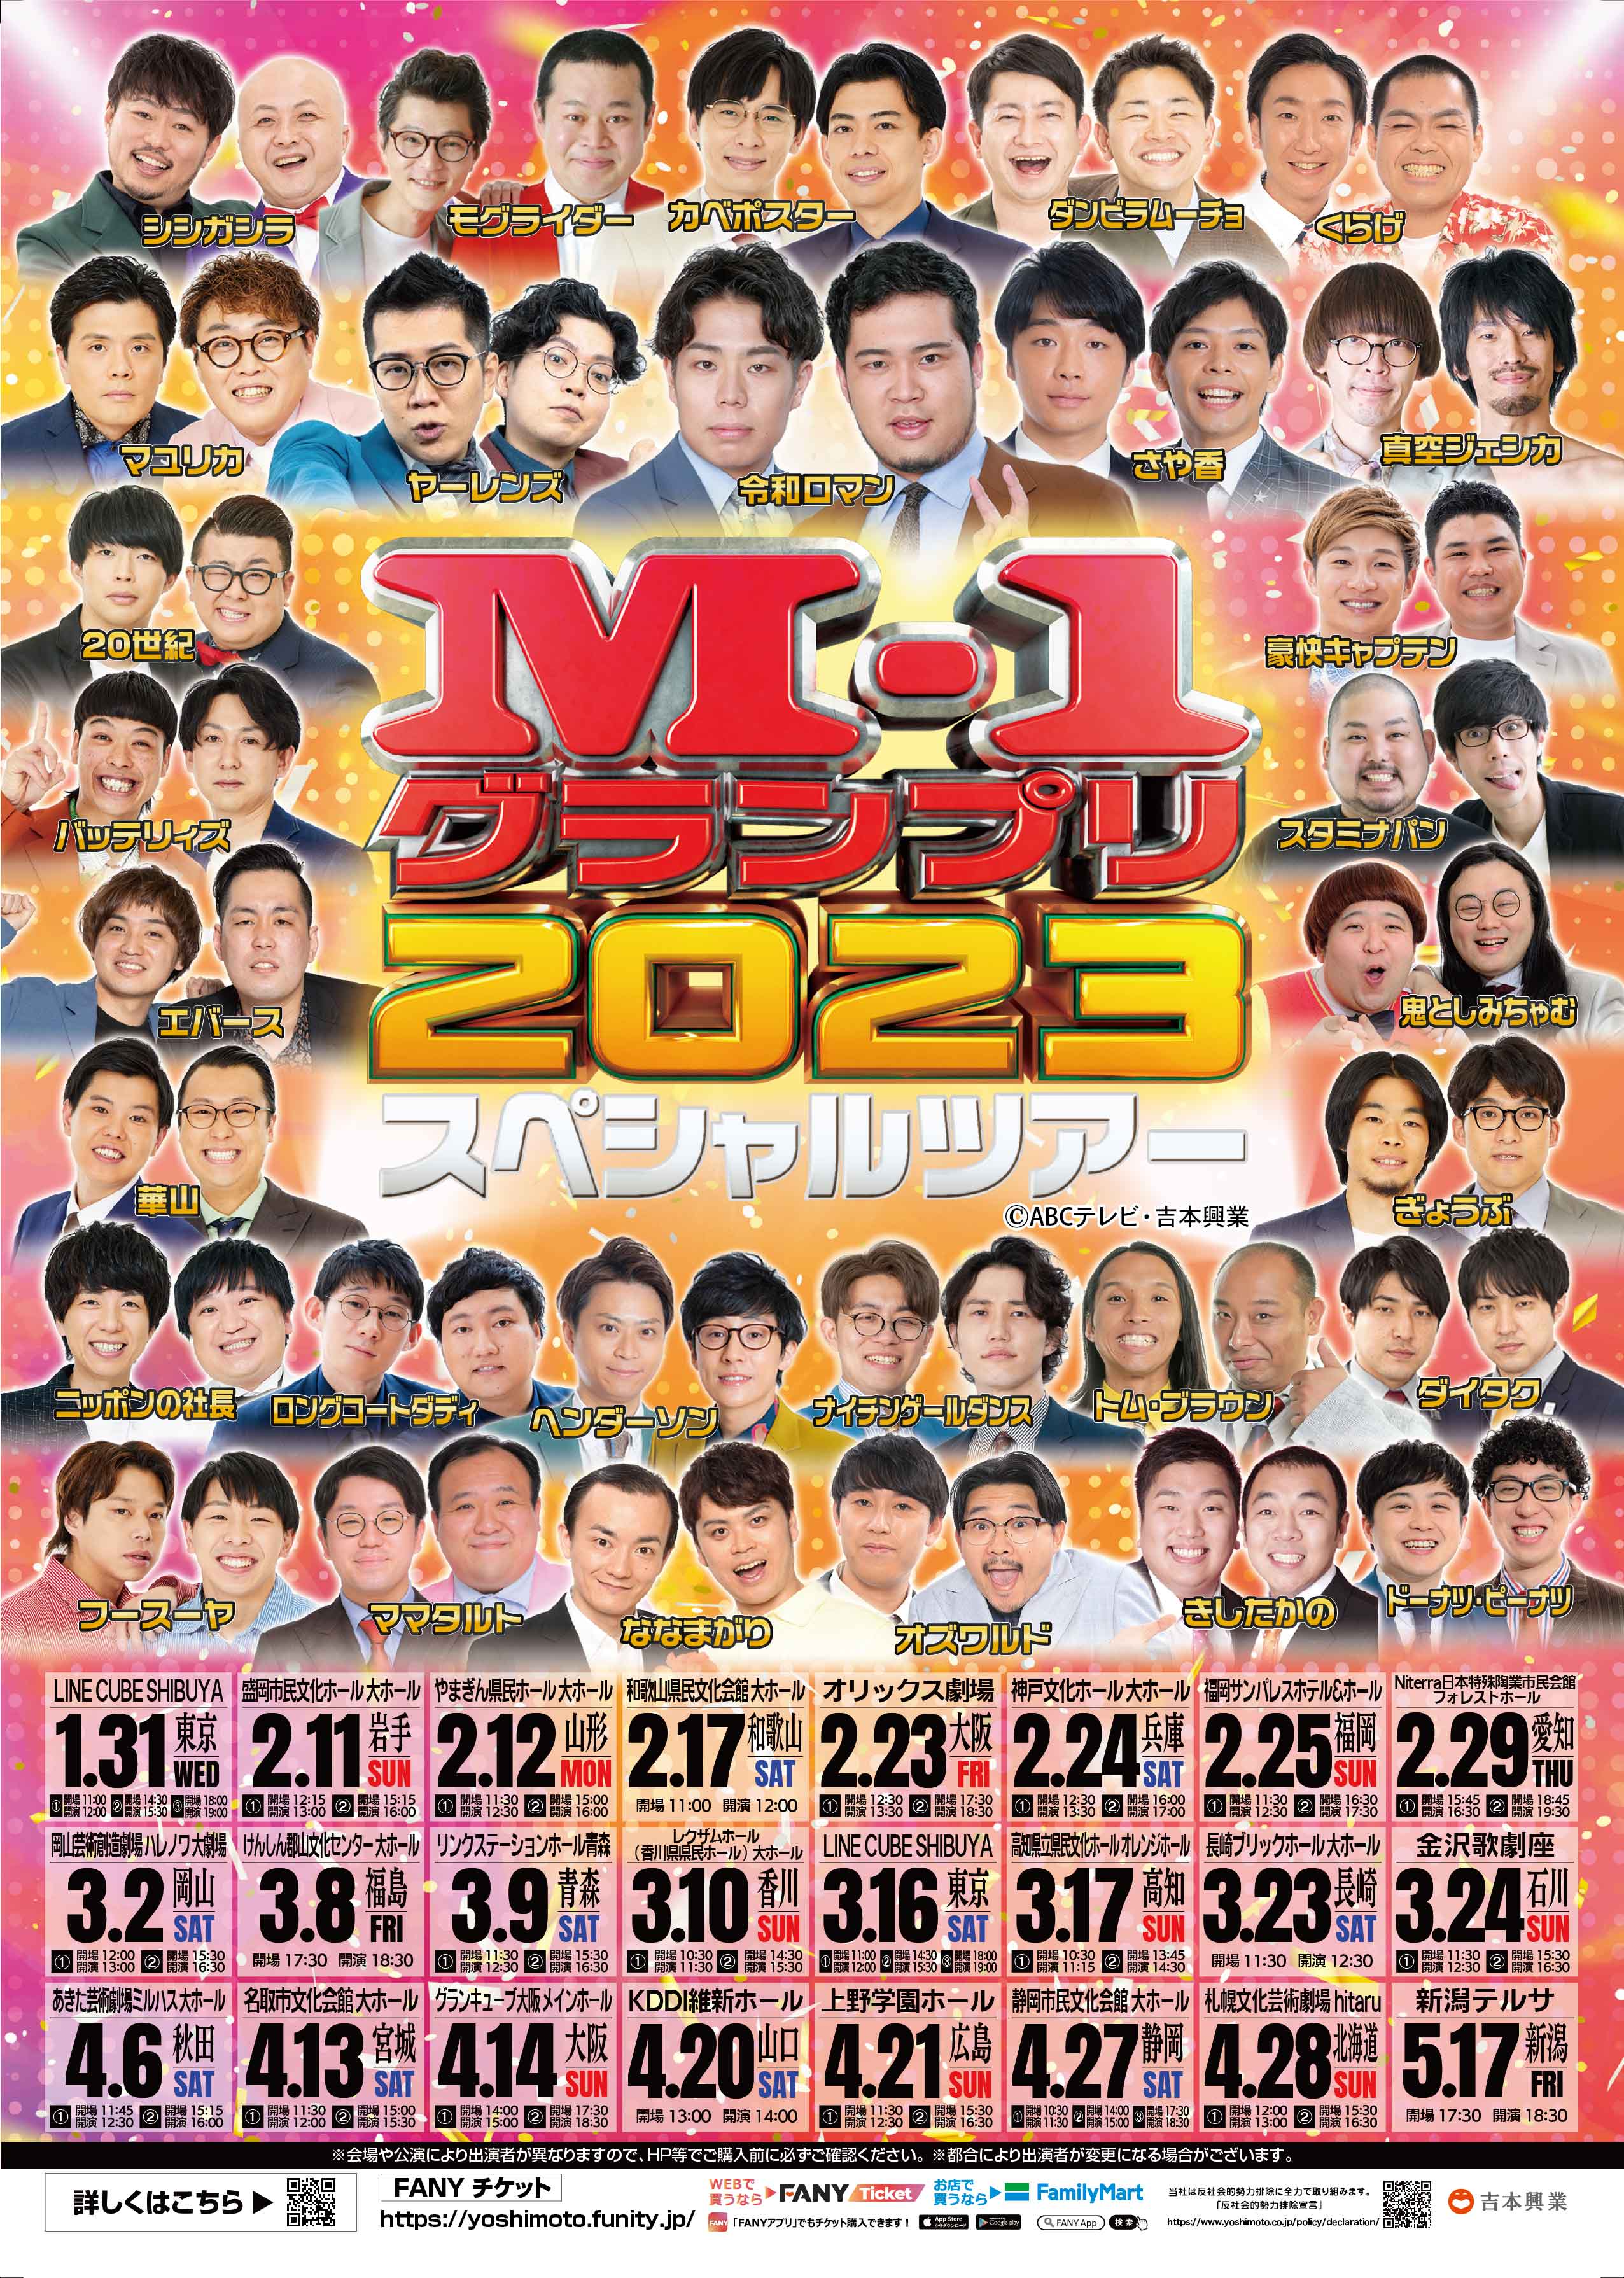 M１ツアースペシャル2019大阪 チケット演劇/芸能